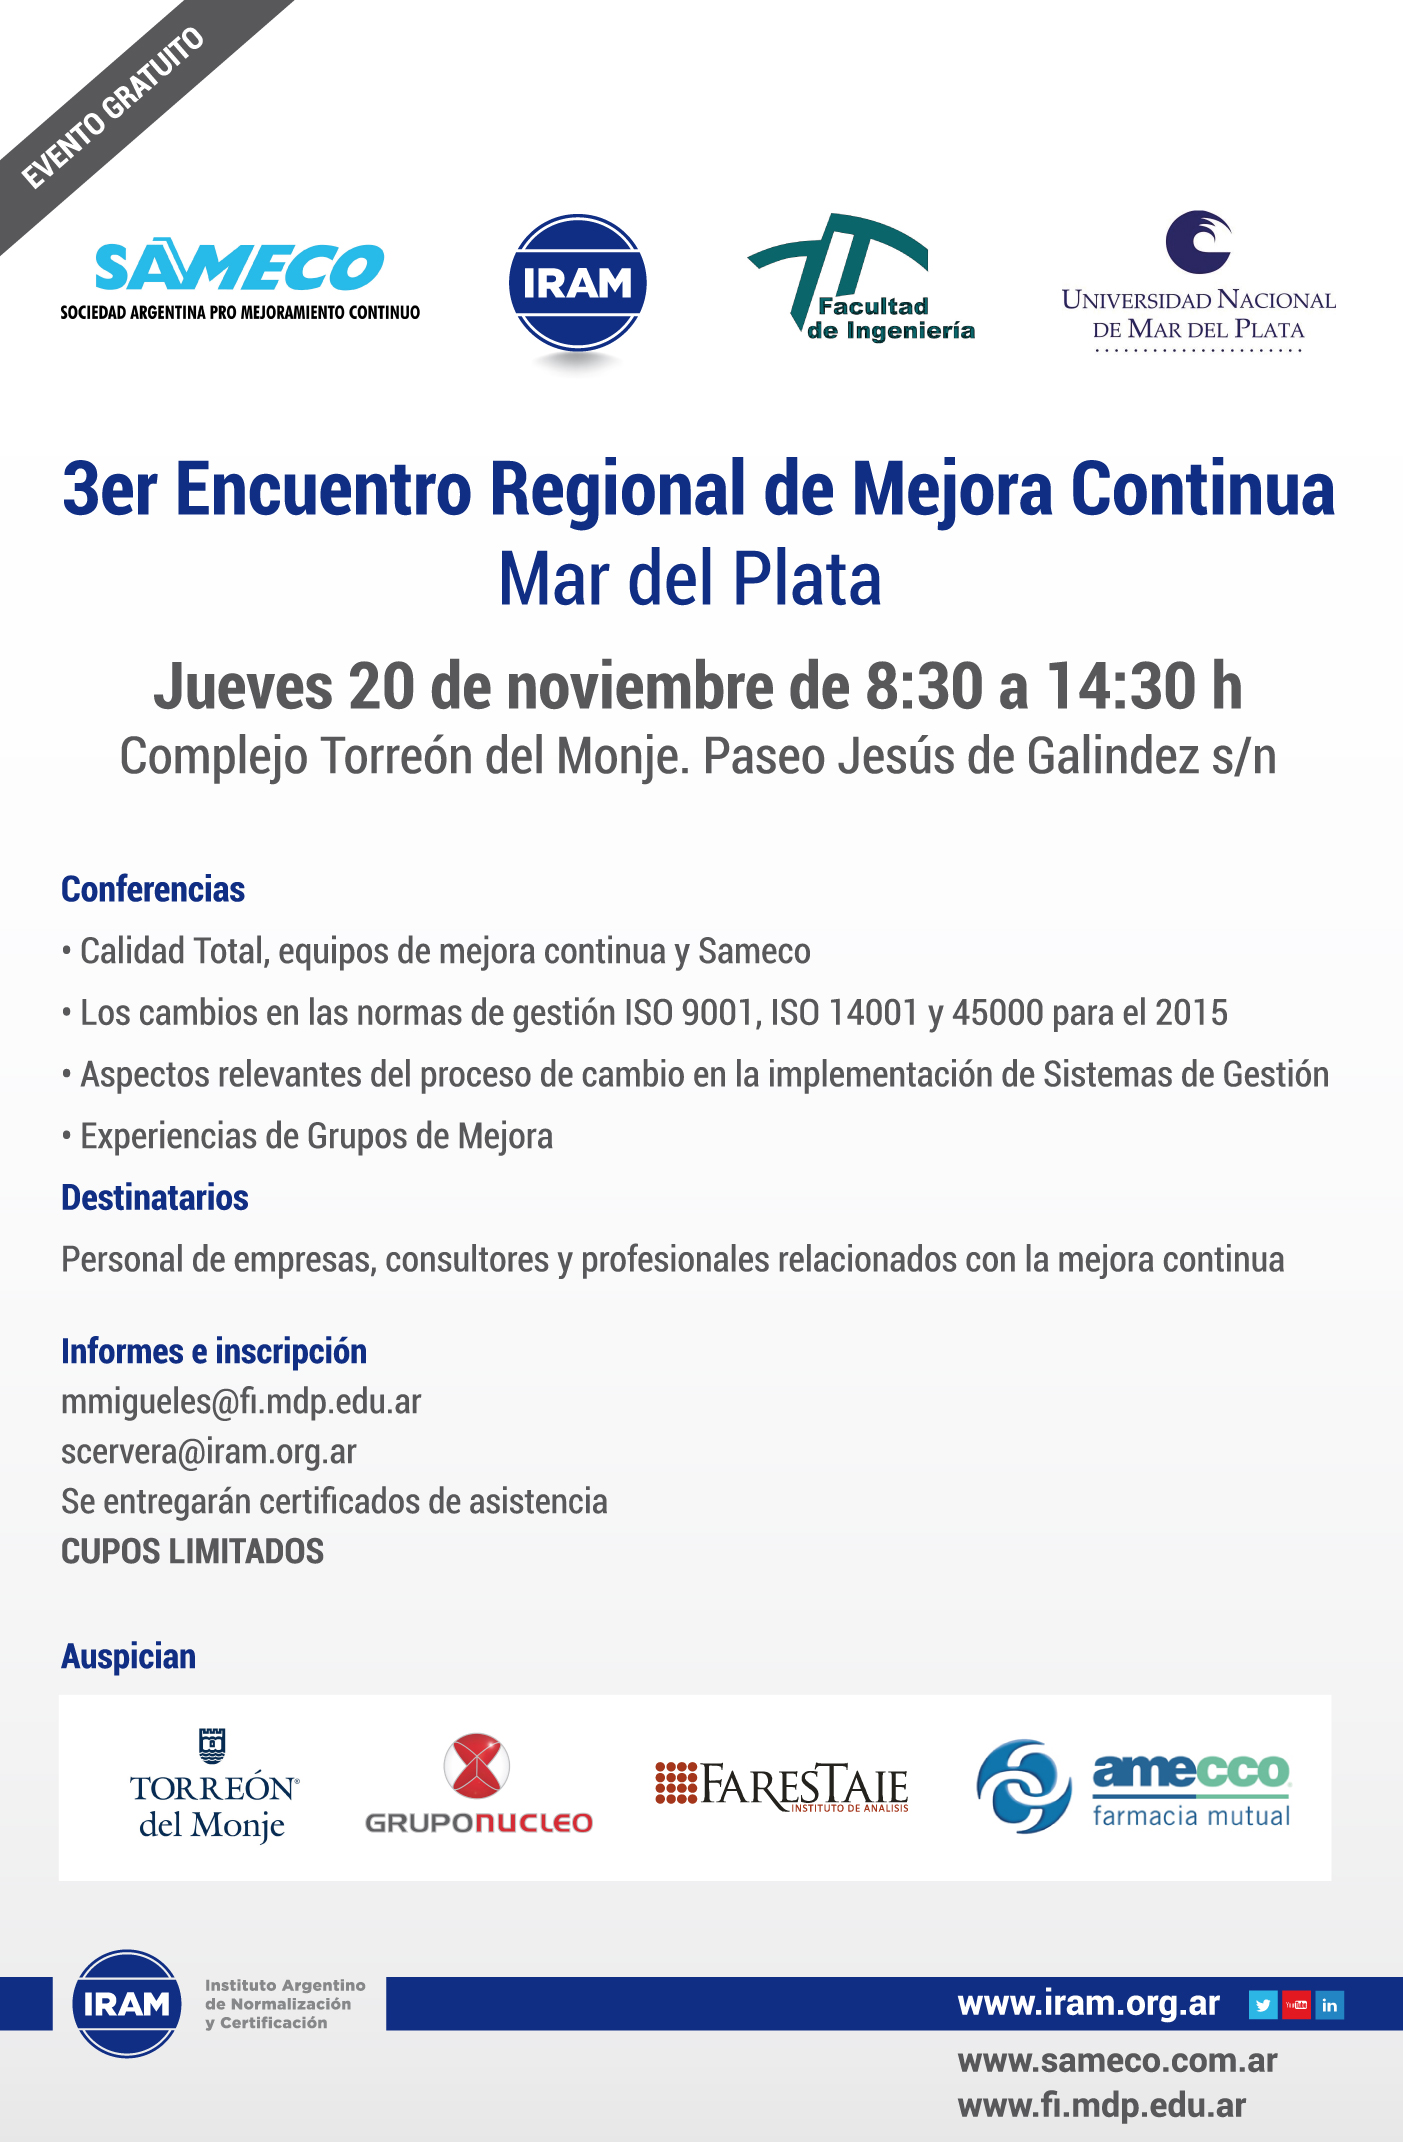 3er Encuentro Regional de Mejora Continua 3 - Mar del Plata